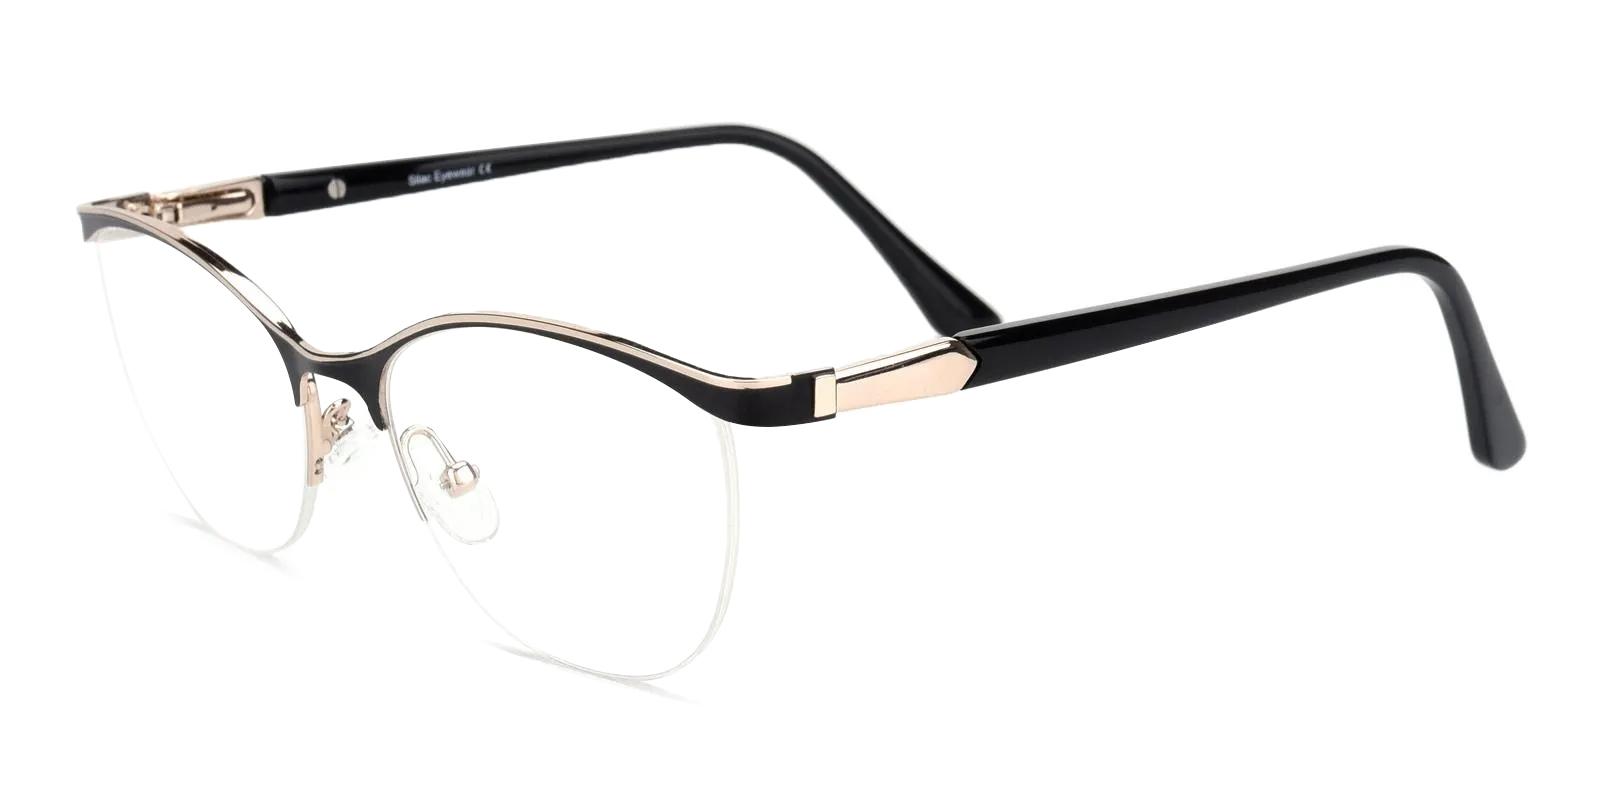 Offor Black Metal Eyeglasses , NosePads Frames from ABBE Glasses